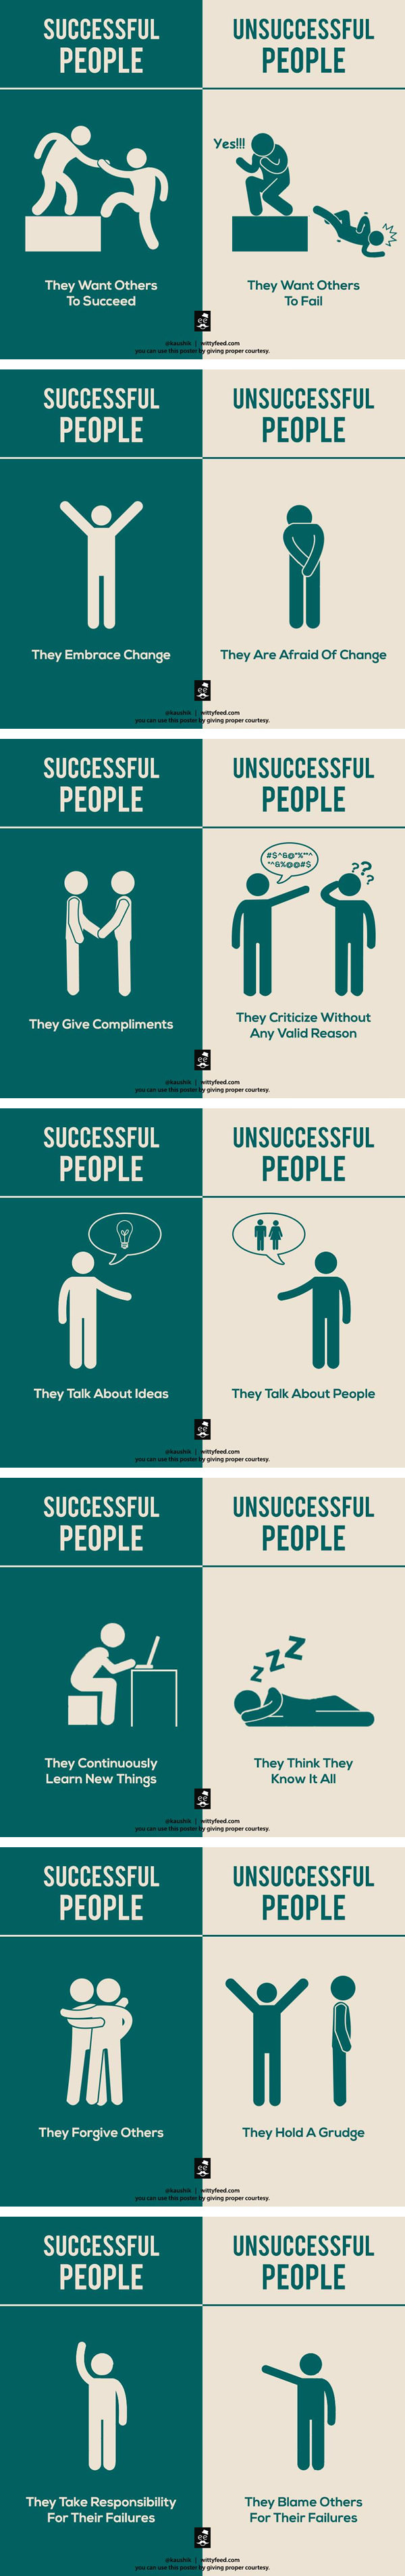 successful-people-vs-unsuccessful-people